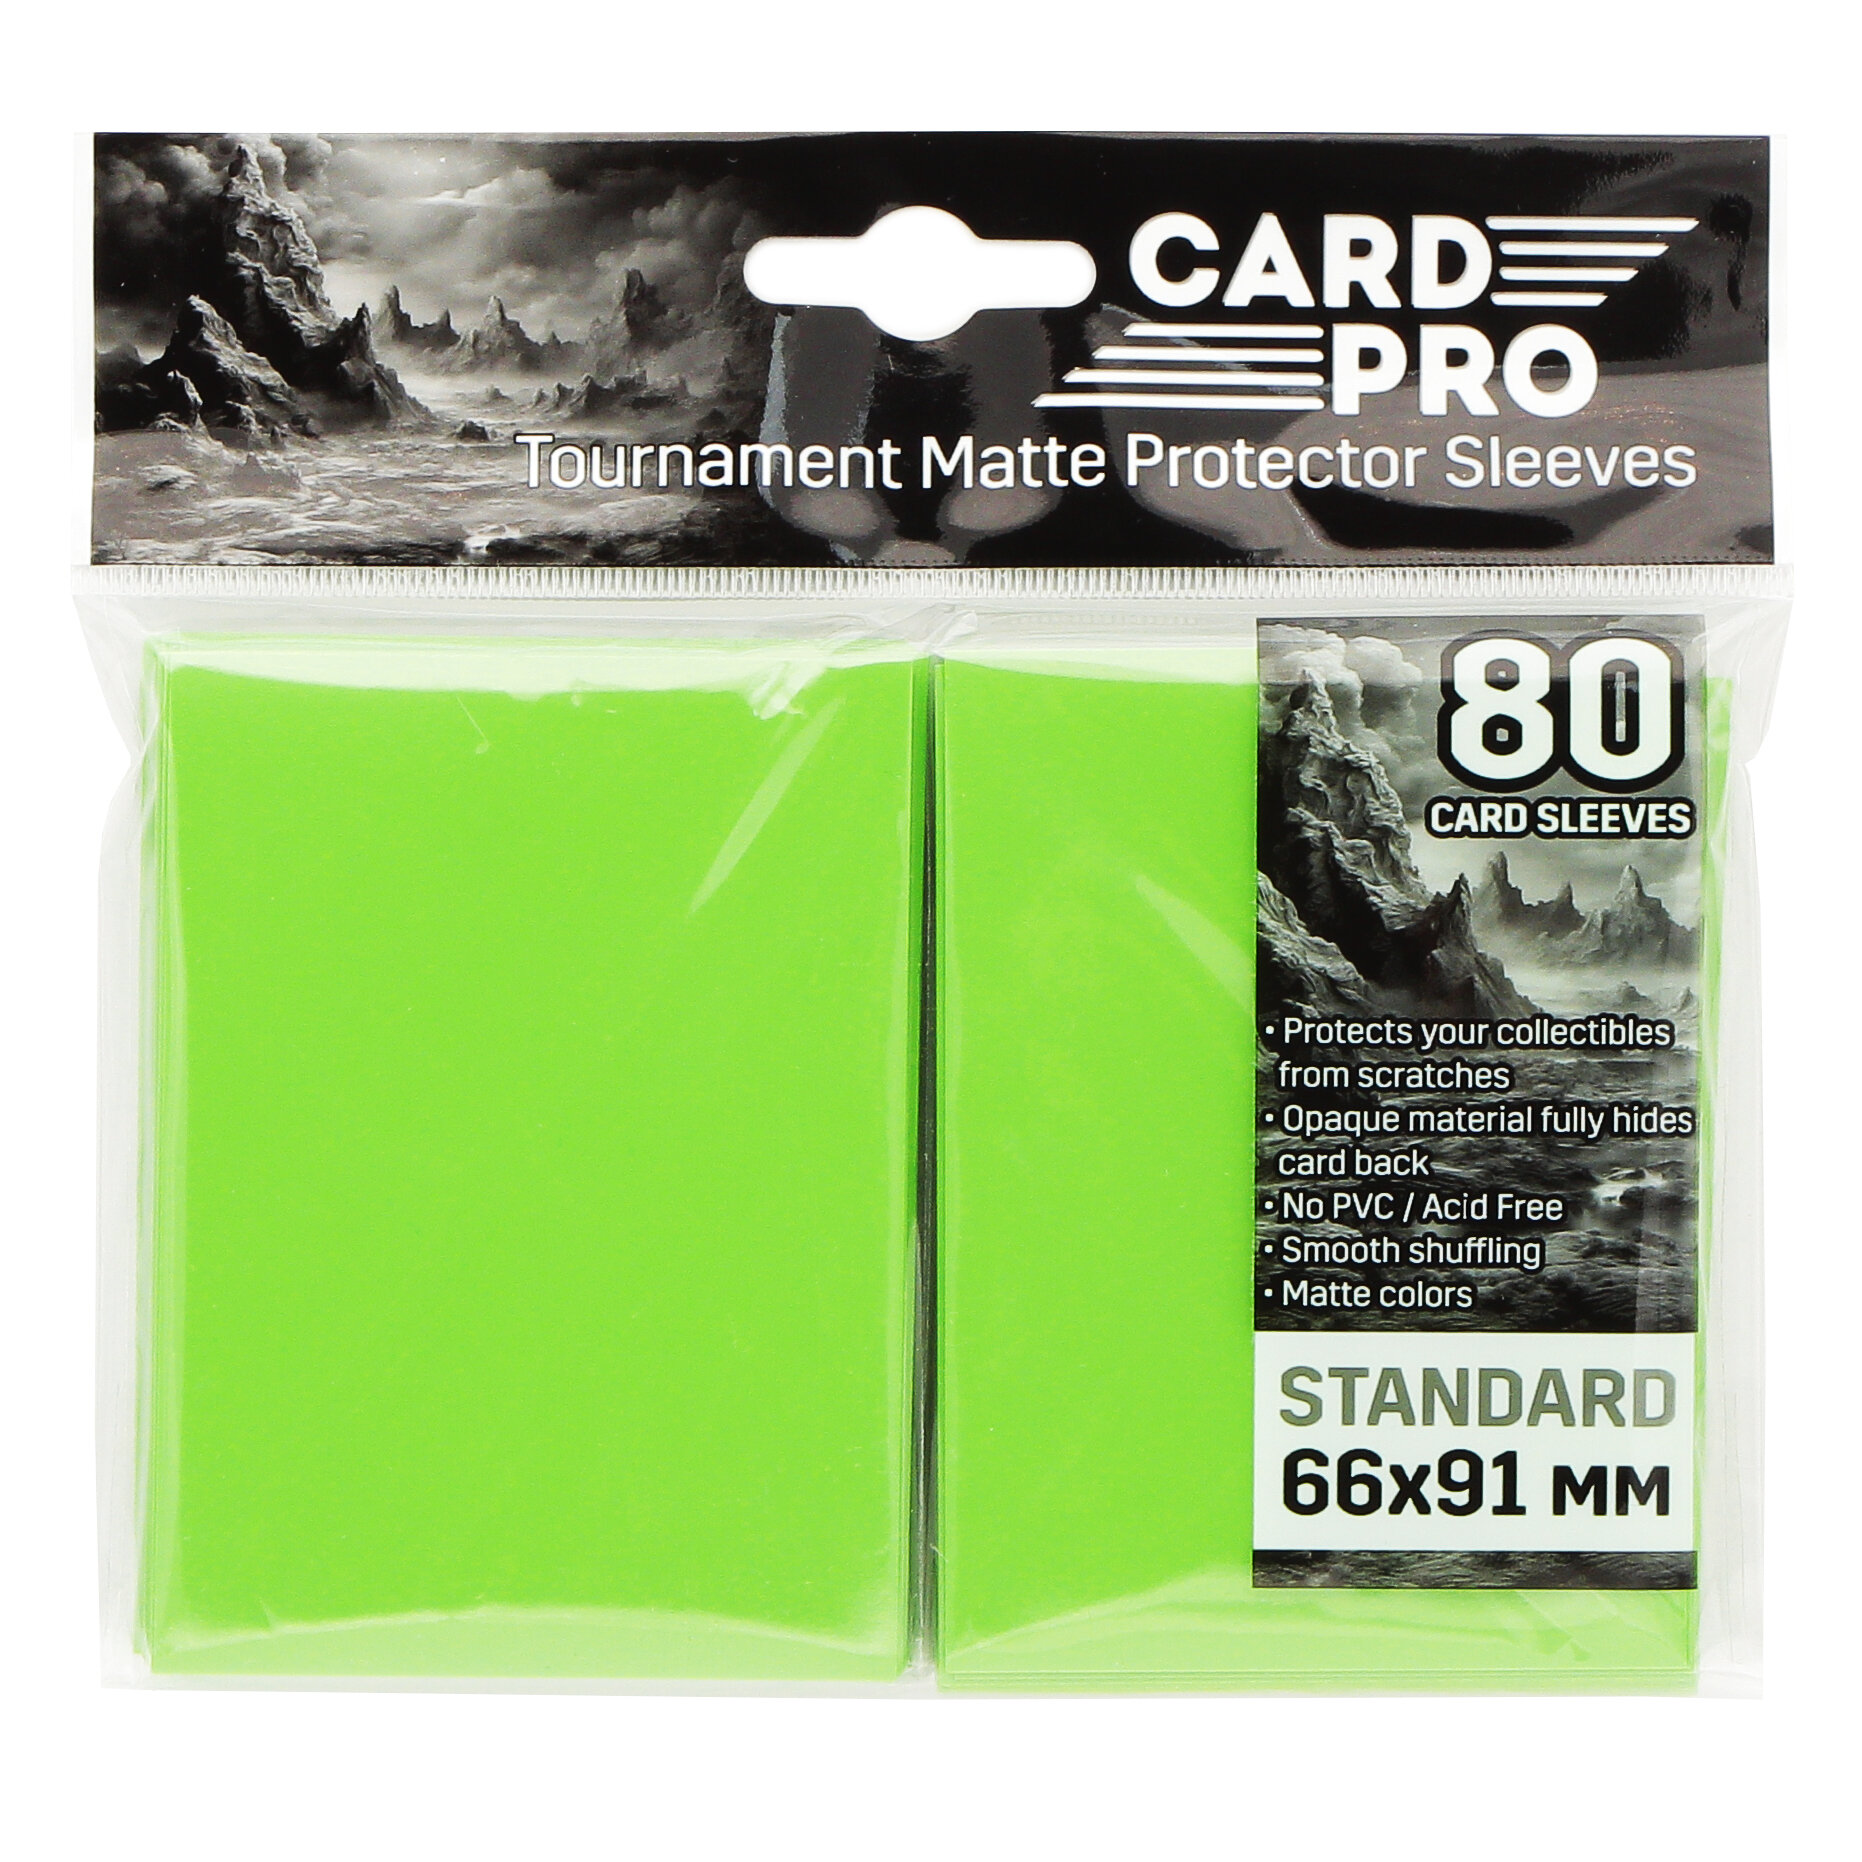 Протекторы Card-Pro Зелёные 66x91 мм, 80 шт. для карт MTG, Pokemon